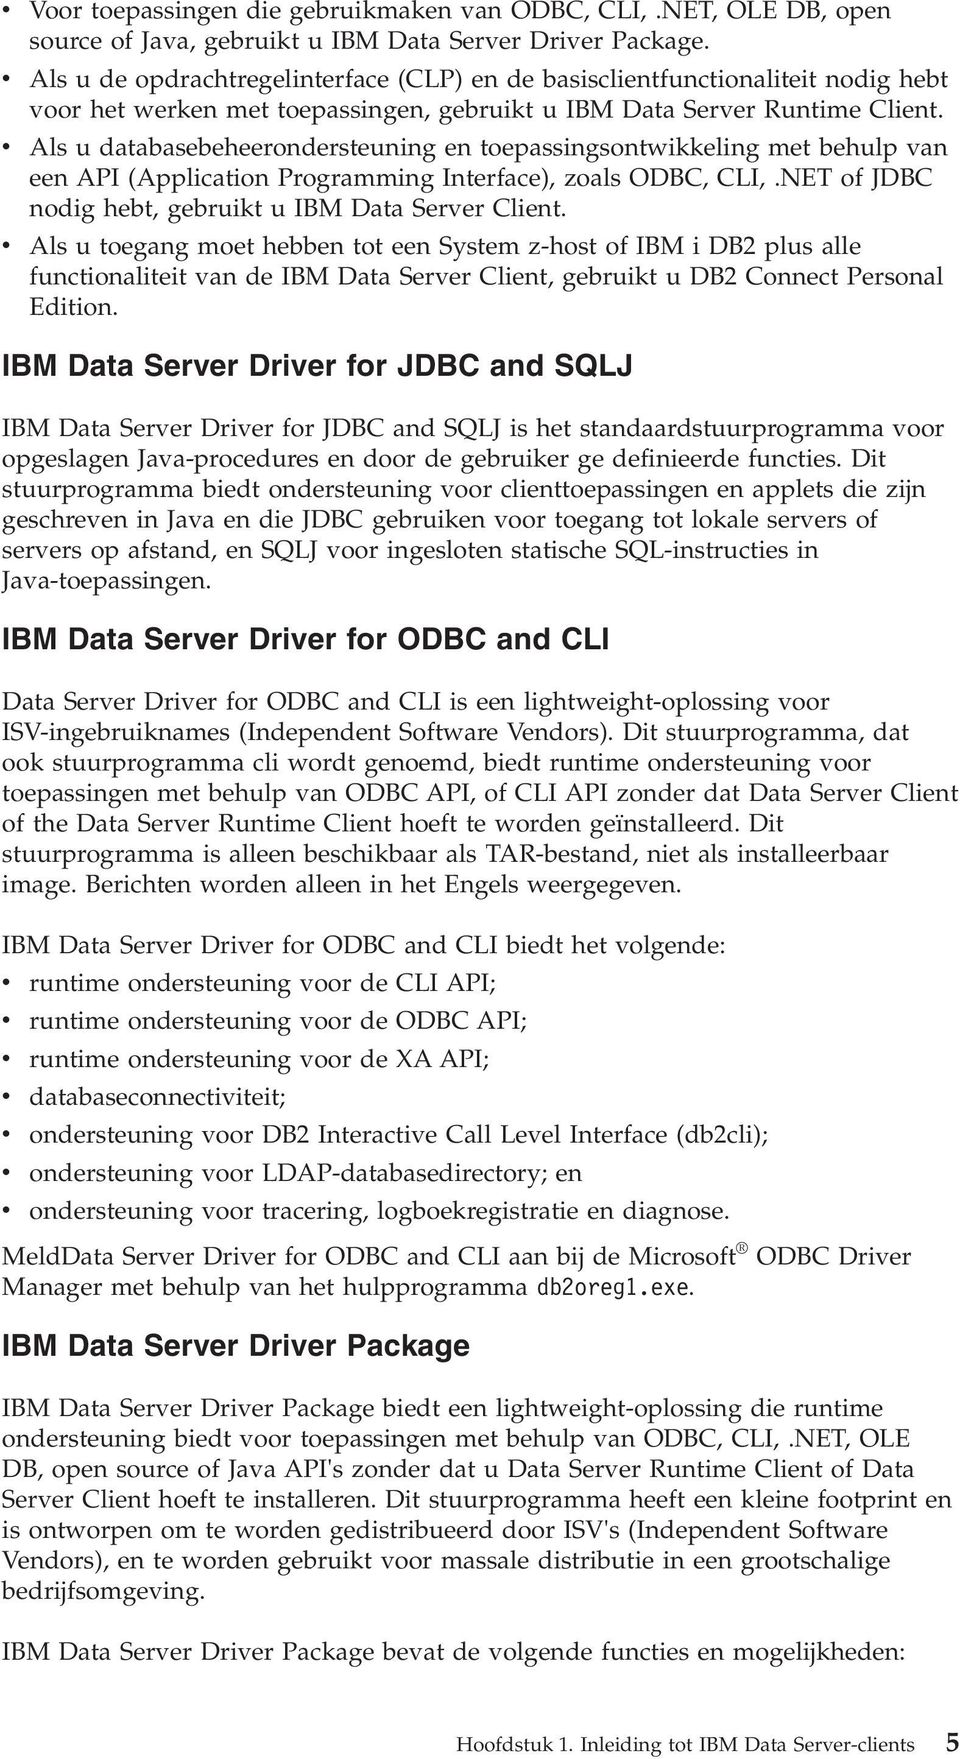 Als u databasebeheerondersteuning en toepassingsontwikkeling met behulp an een API (Application Programming Interface), zoals ODBC, CLI,.NET of JDBC nodig hebt, gebruikt u IBM Data Serer Client.